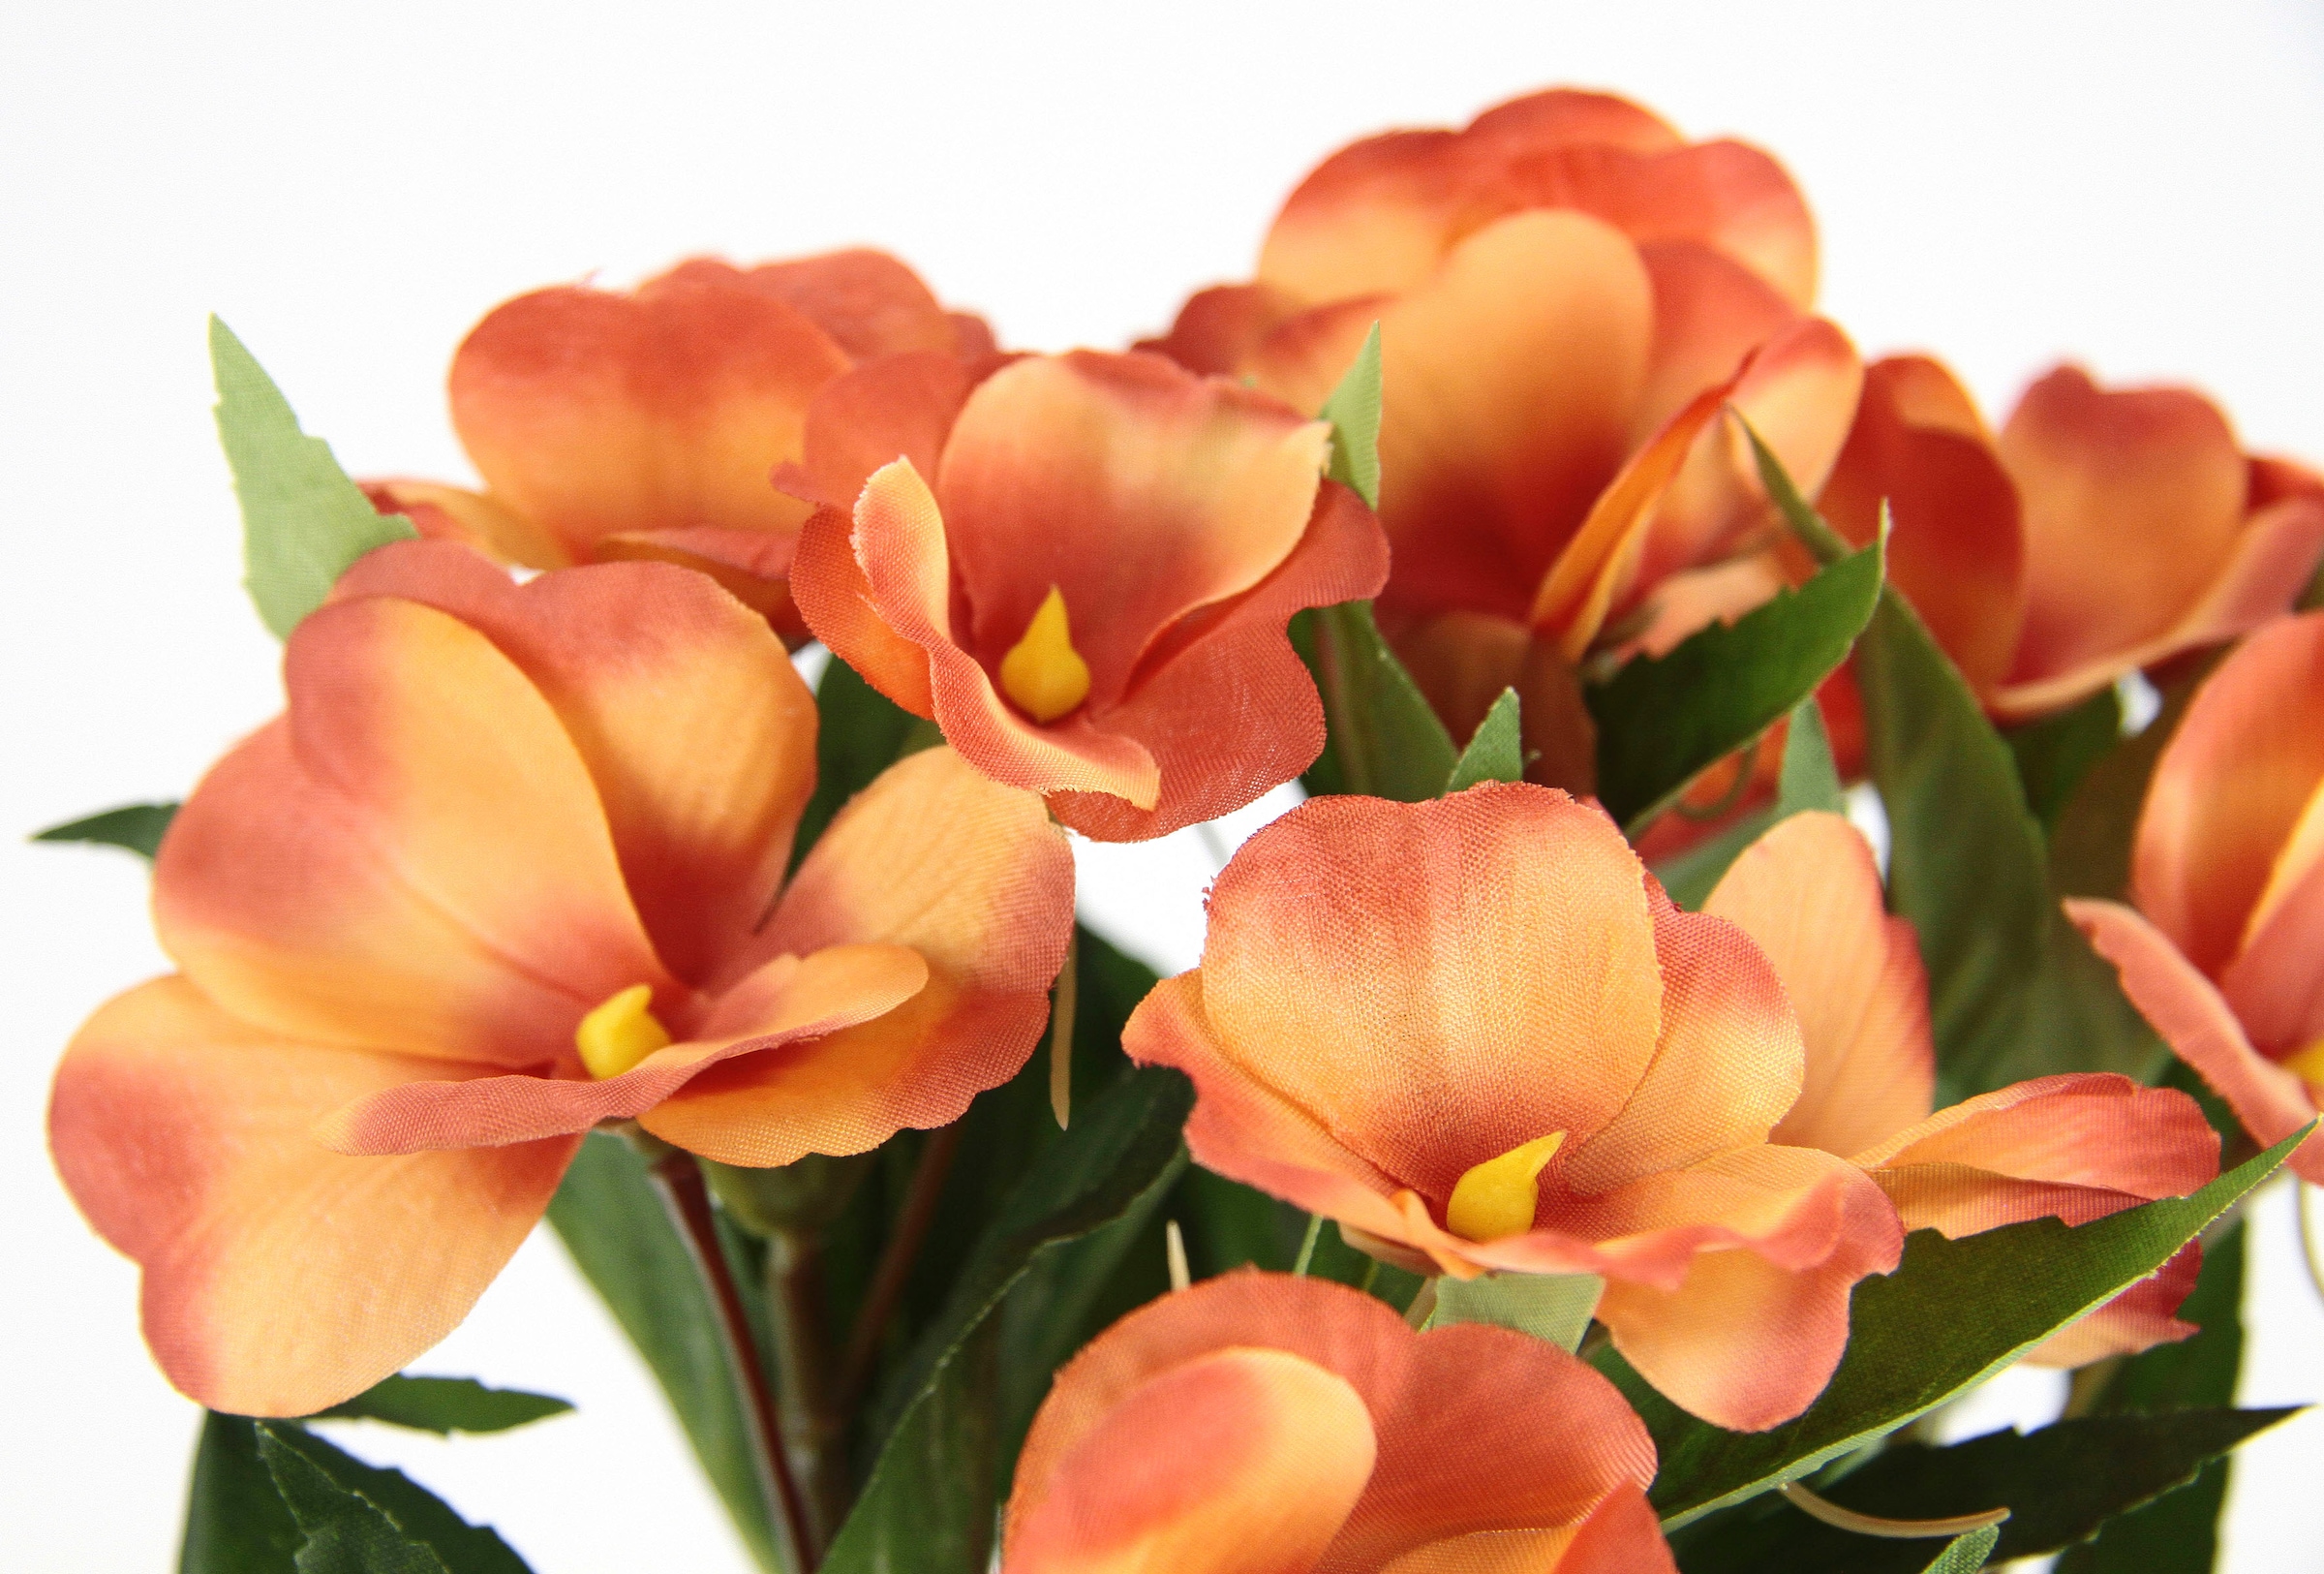 I.GE.A. Kunstblume »Fleißiges Lieschen«, Im Topf, 3er Set Impatiens  Valeriana Textilblume Deko Blumentöpfe auf Raten kaufen